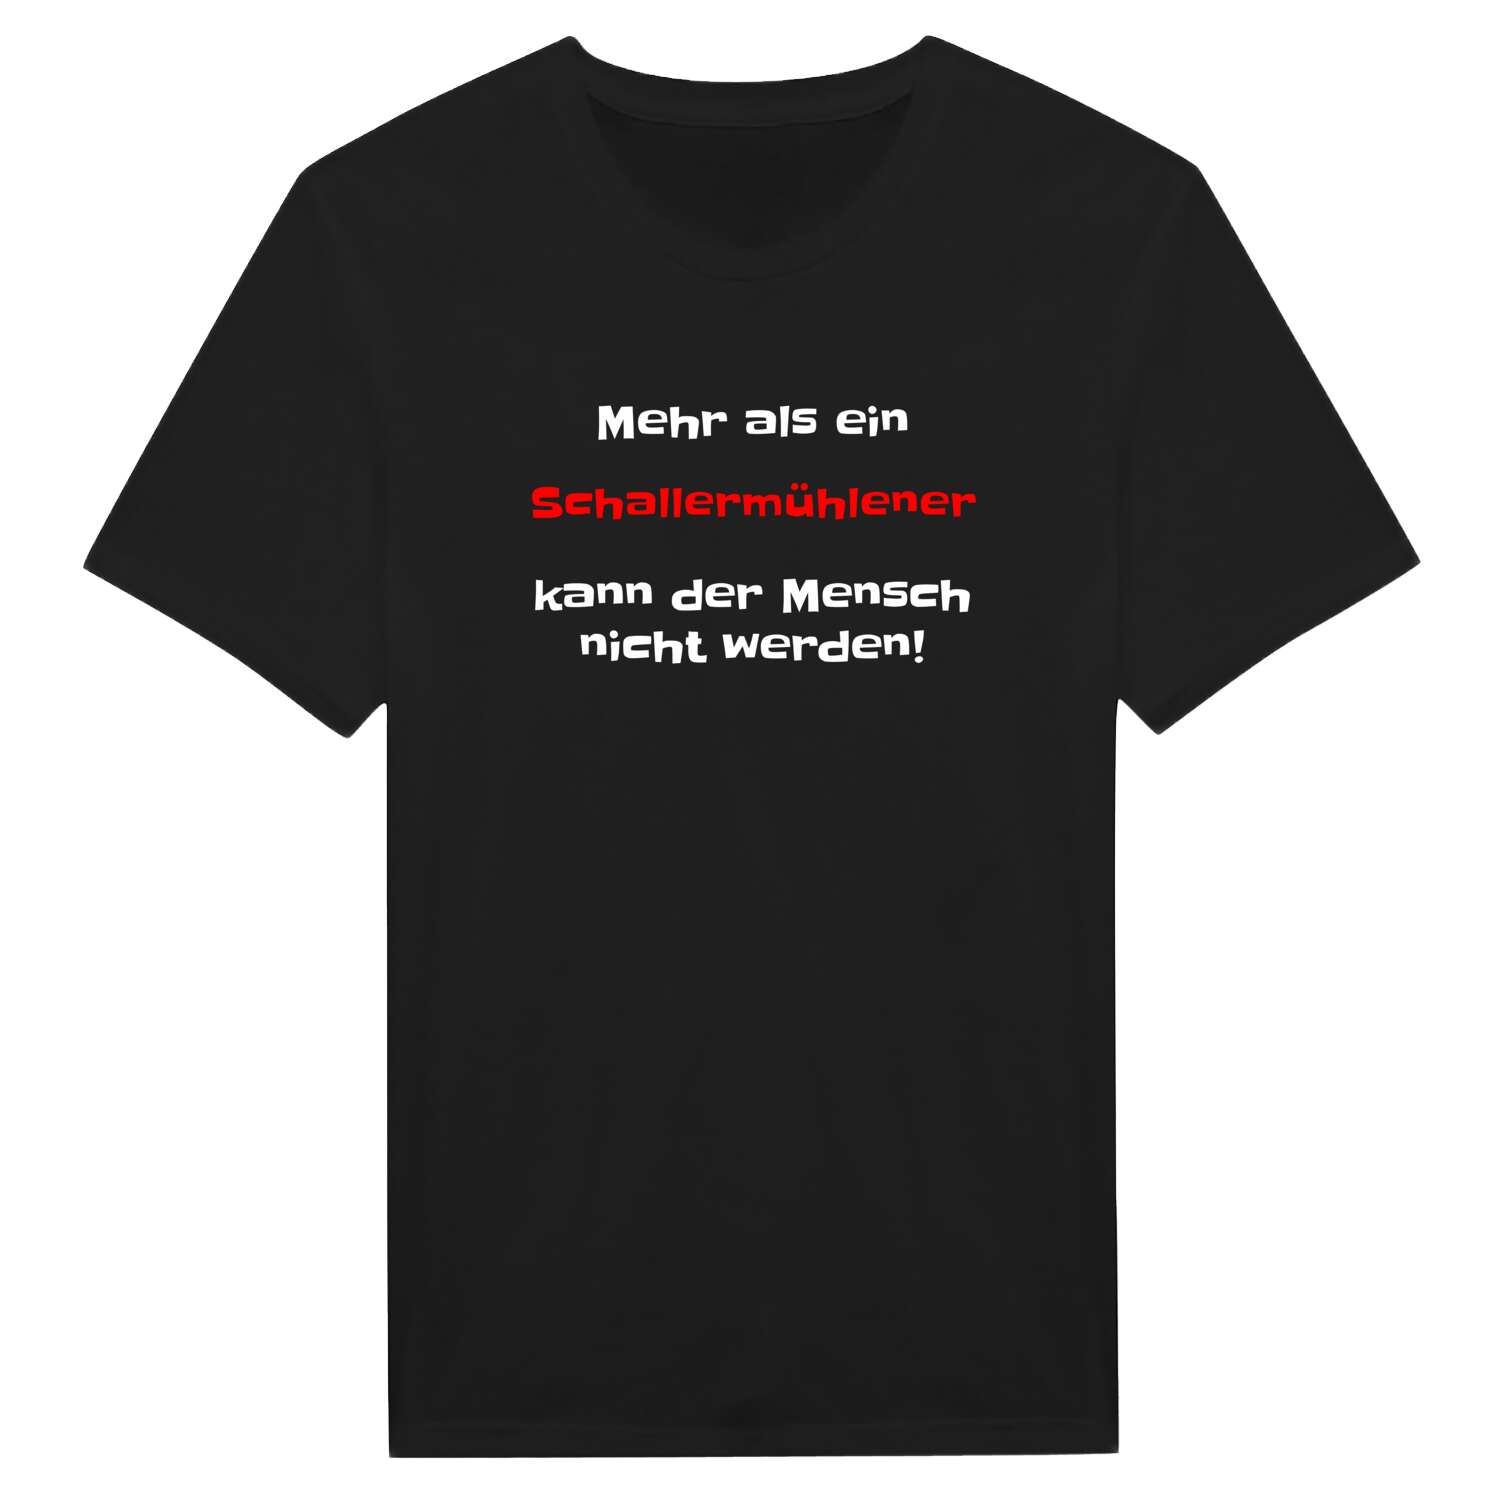 Schallermühle T-Shirt »Mehr als ein«